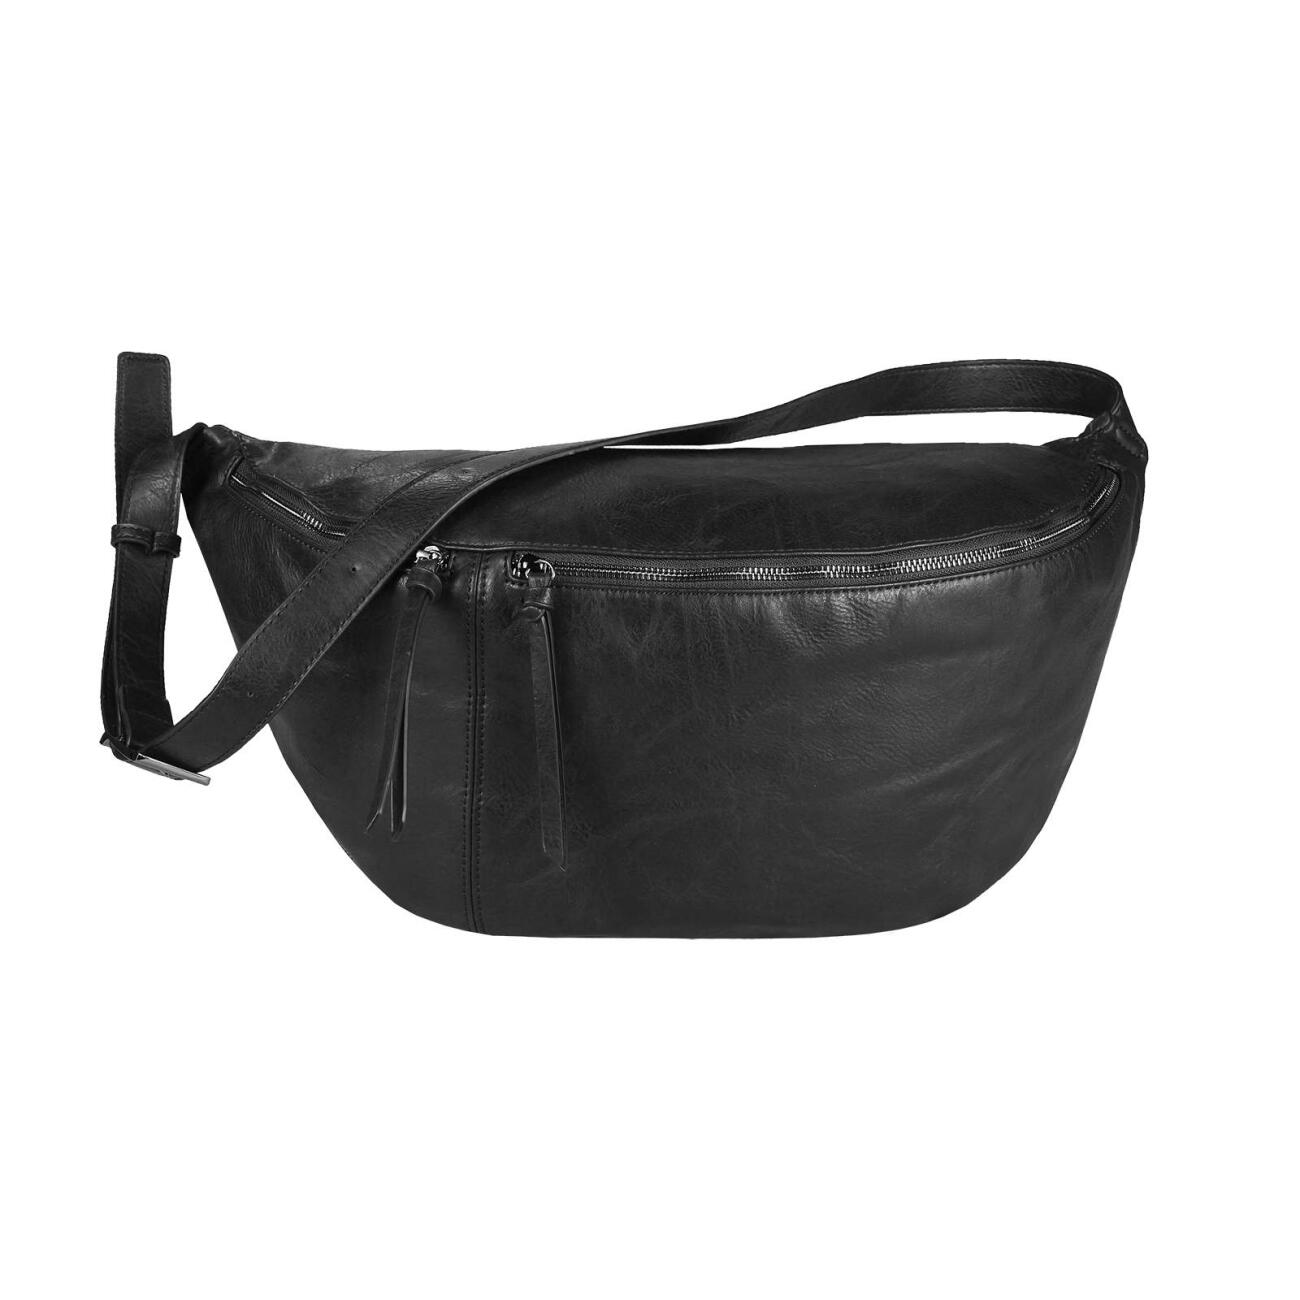 Gürteltasche Bauchtasche Hüfttasche Crossbag Umhängetasche Sport Leder schwarz 